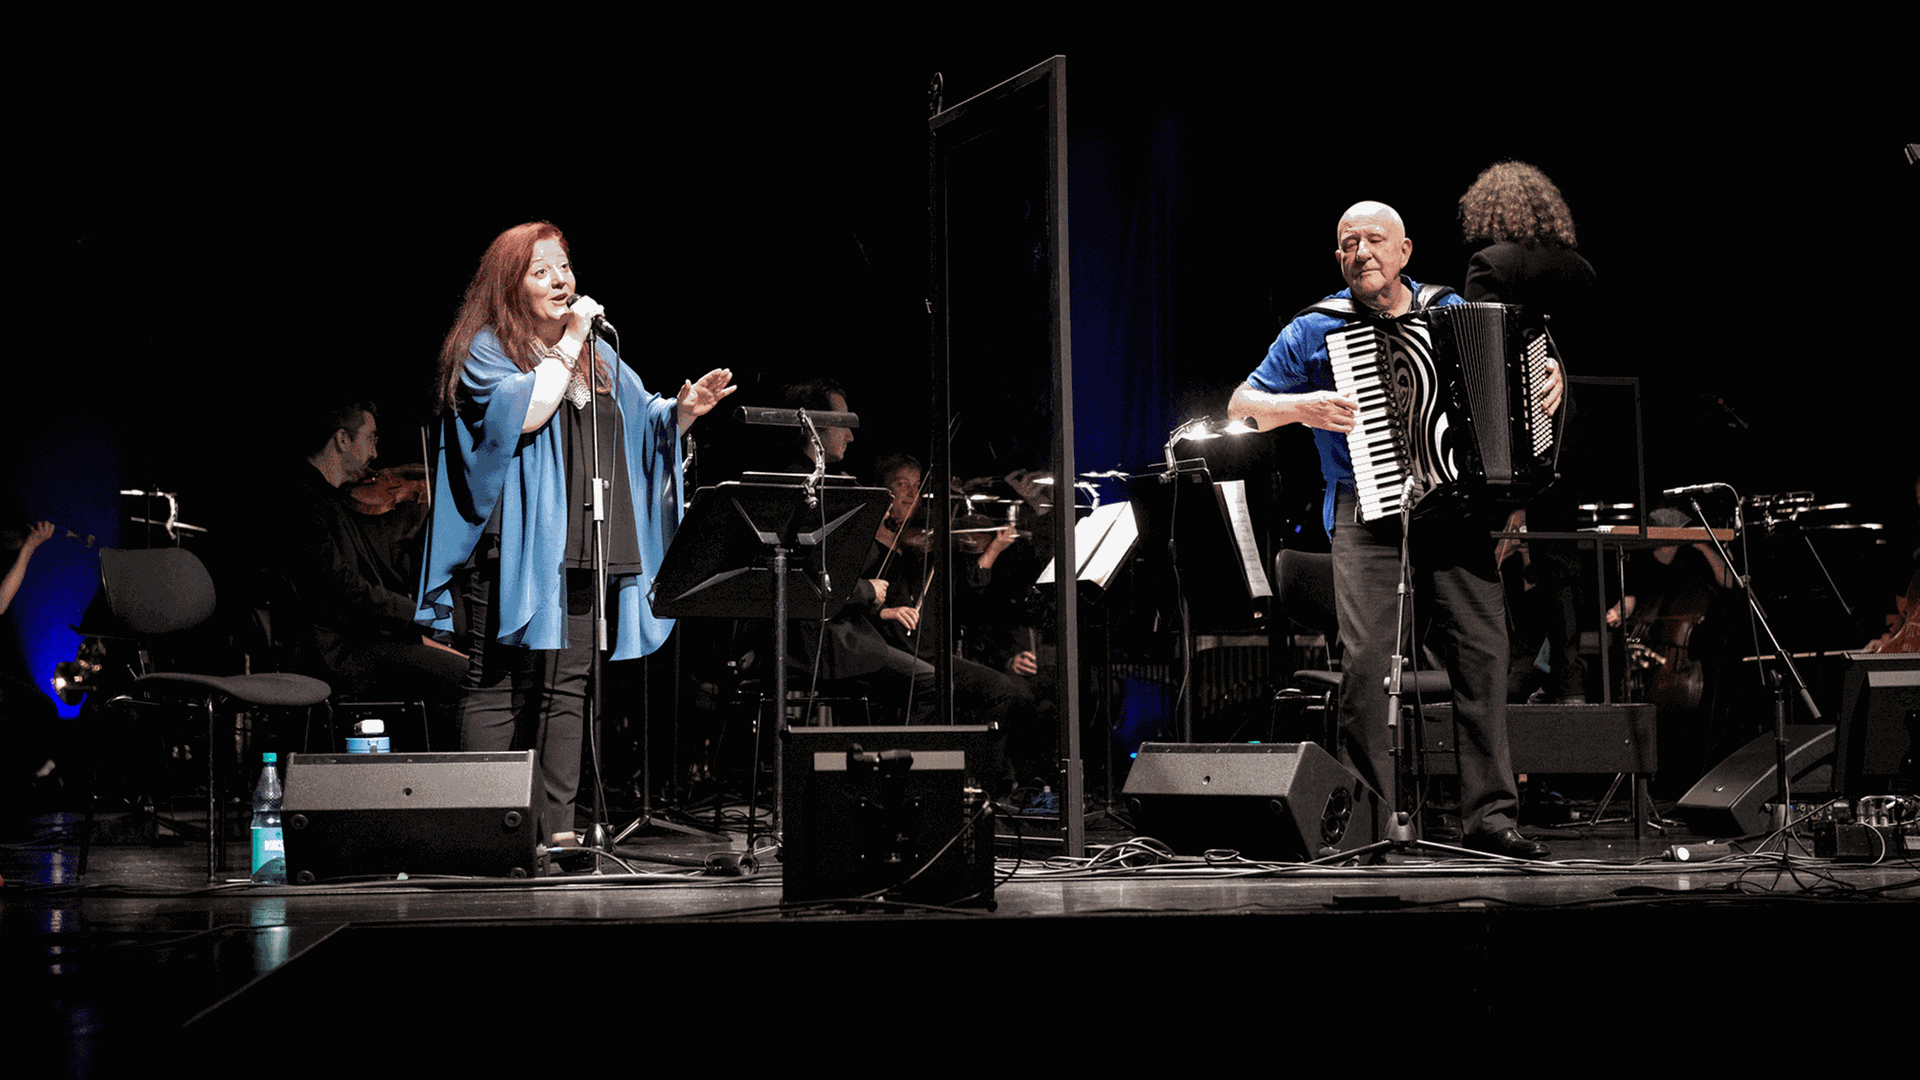 Die Sängerin Dima Orsho steht neben dem Akkordeonspieler Manfred Leuchter auf einer Bühne, auf der im Hintergrund ein Orchester sitzt.